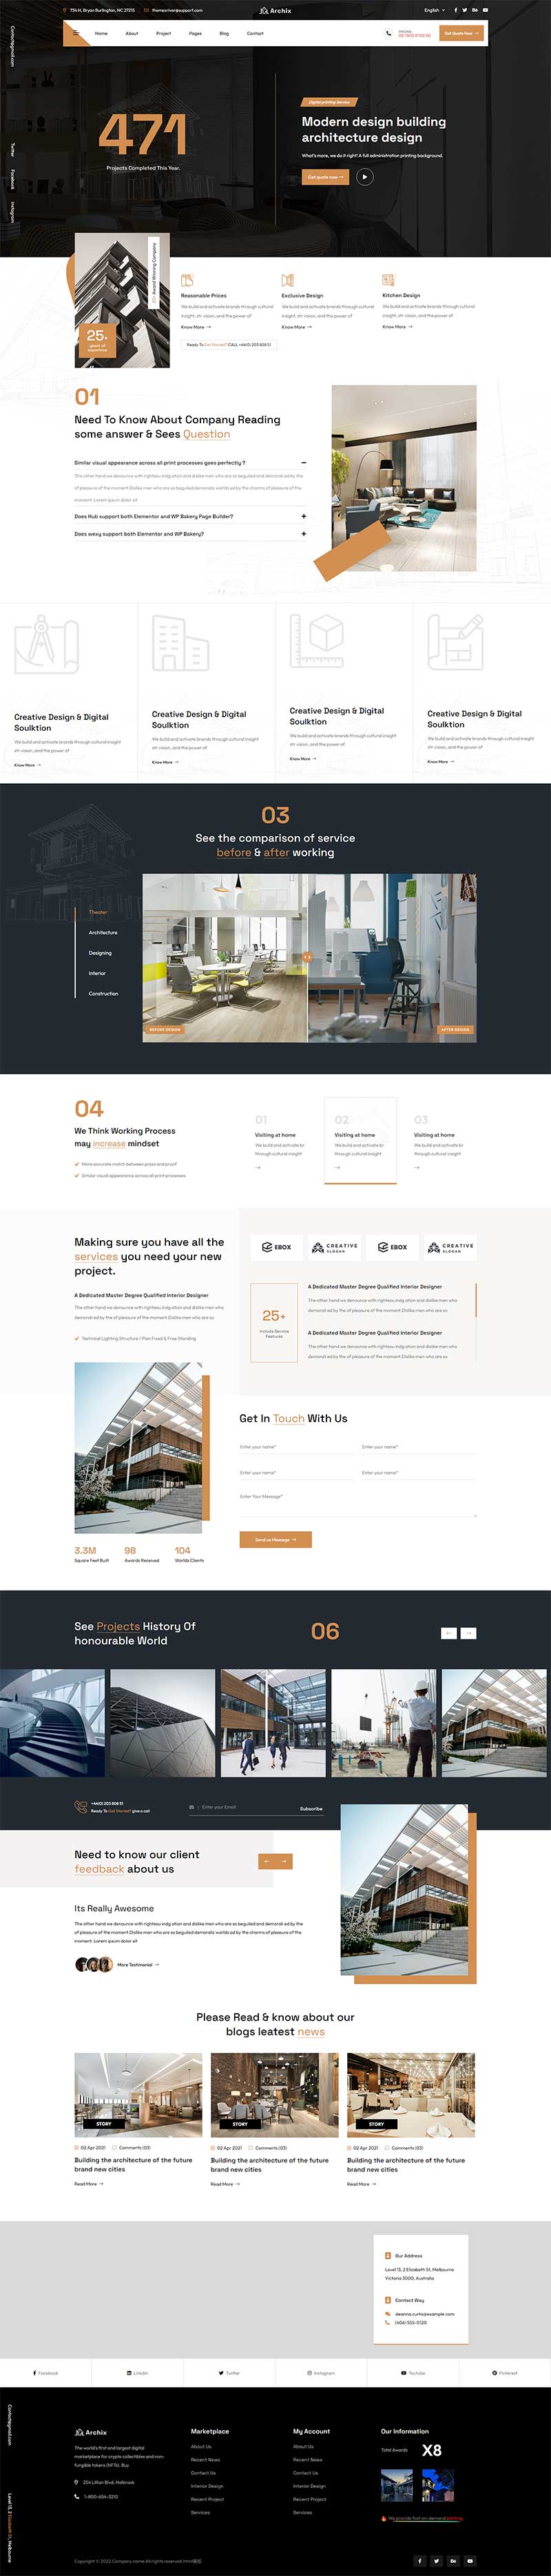 现代建筑工程设计服务公司html5网站模板